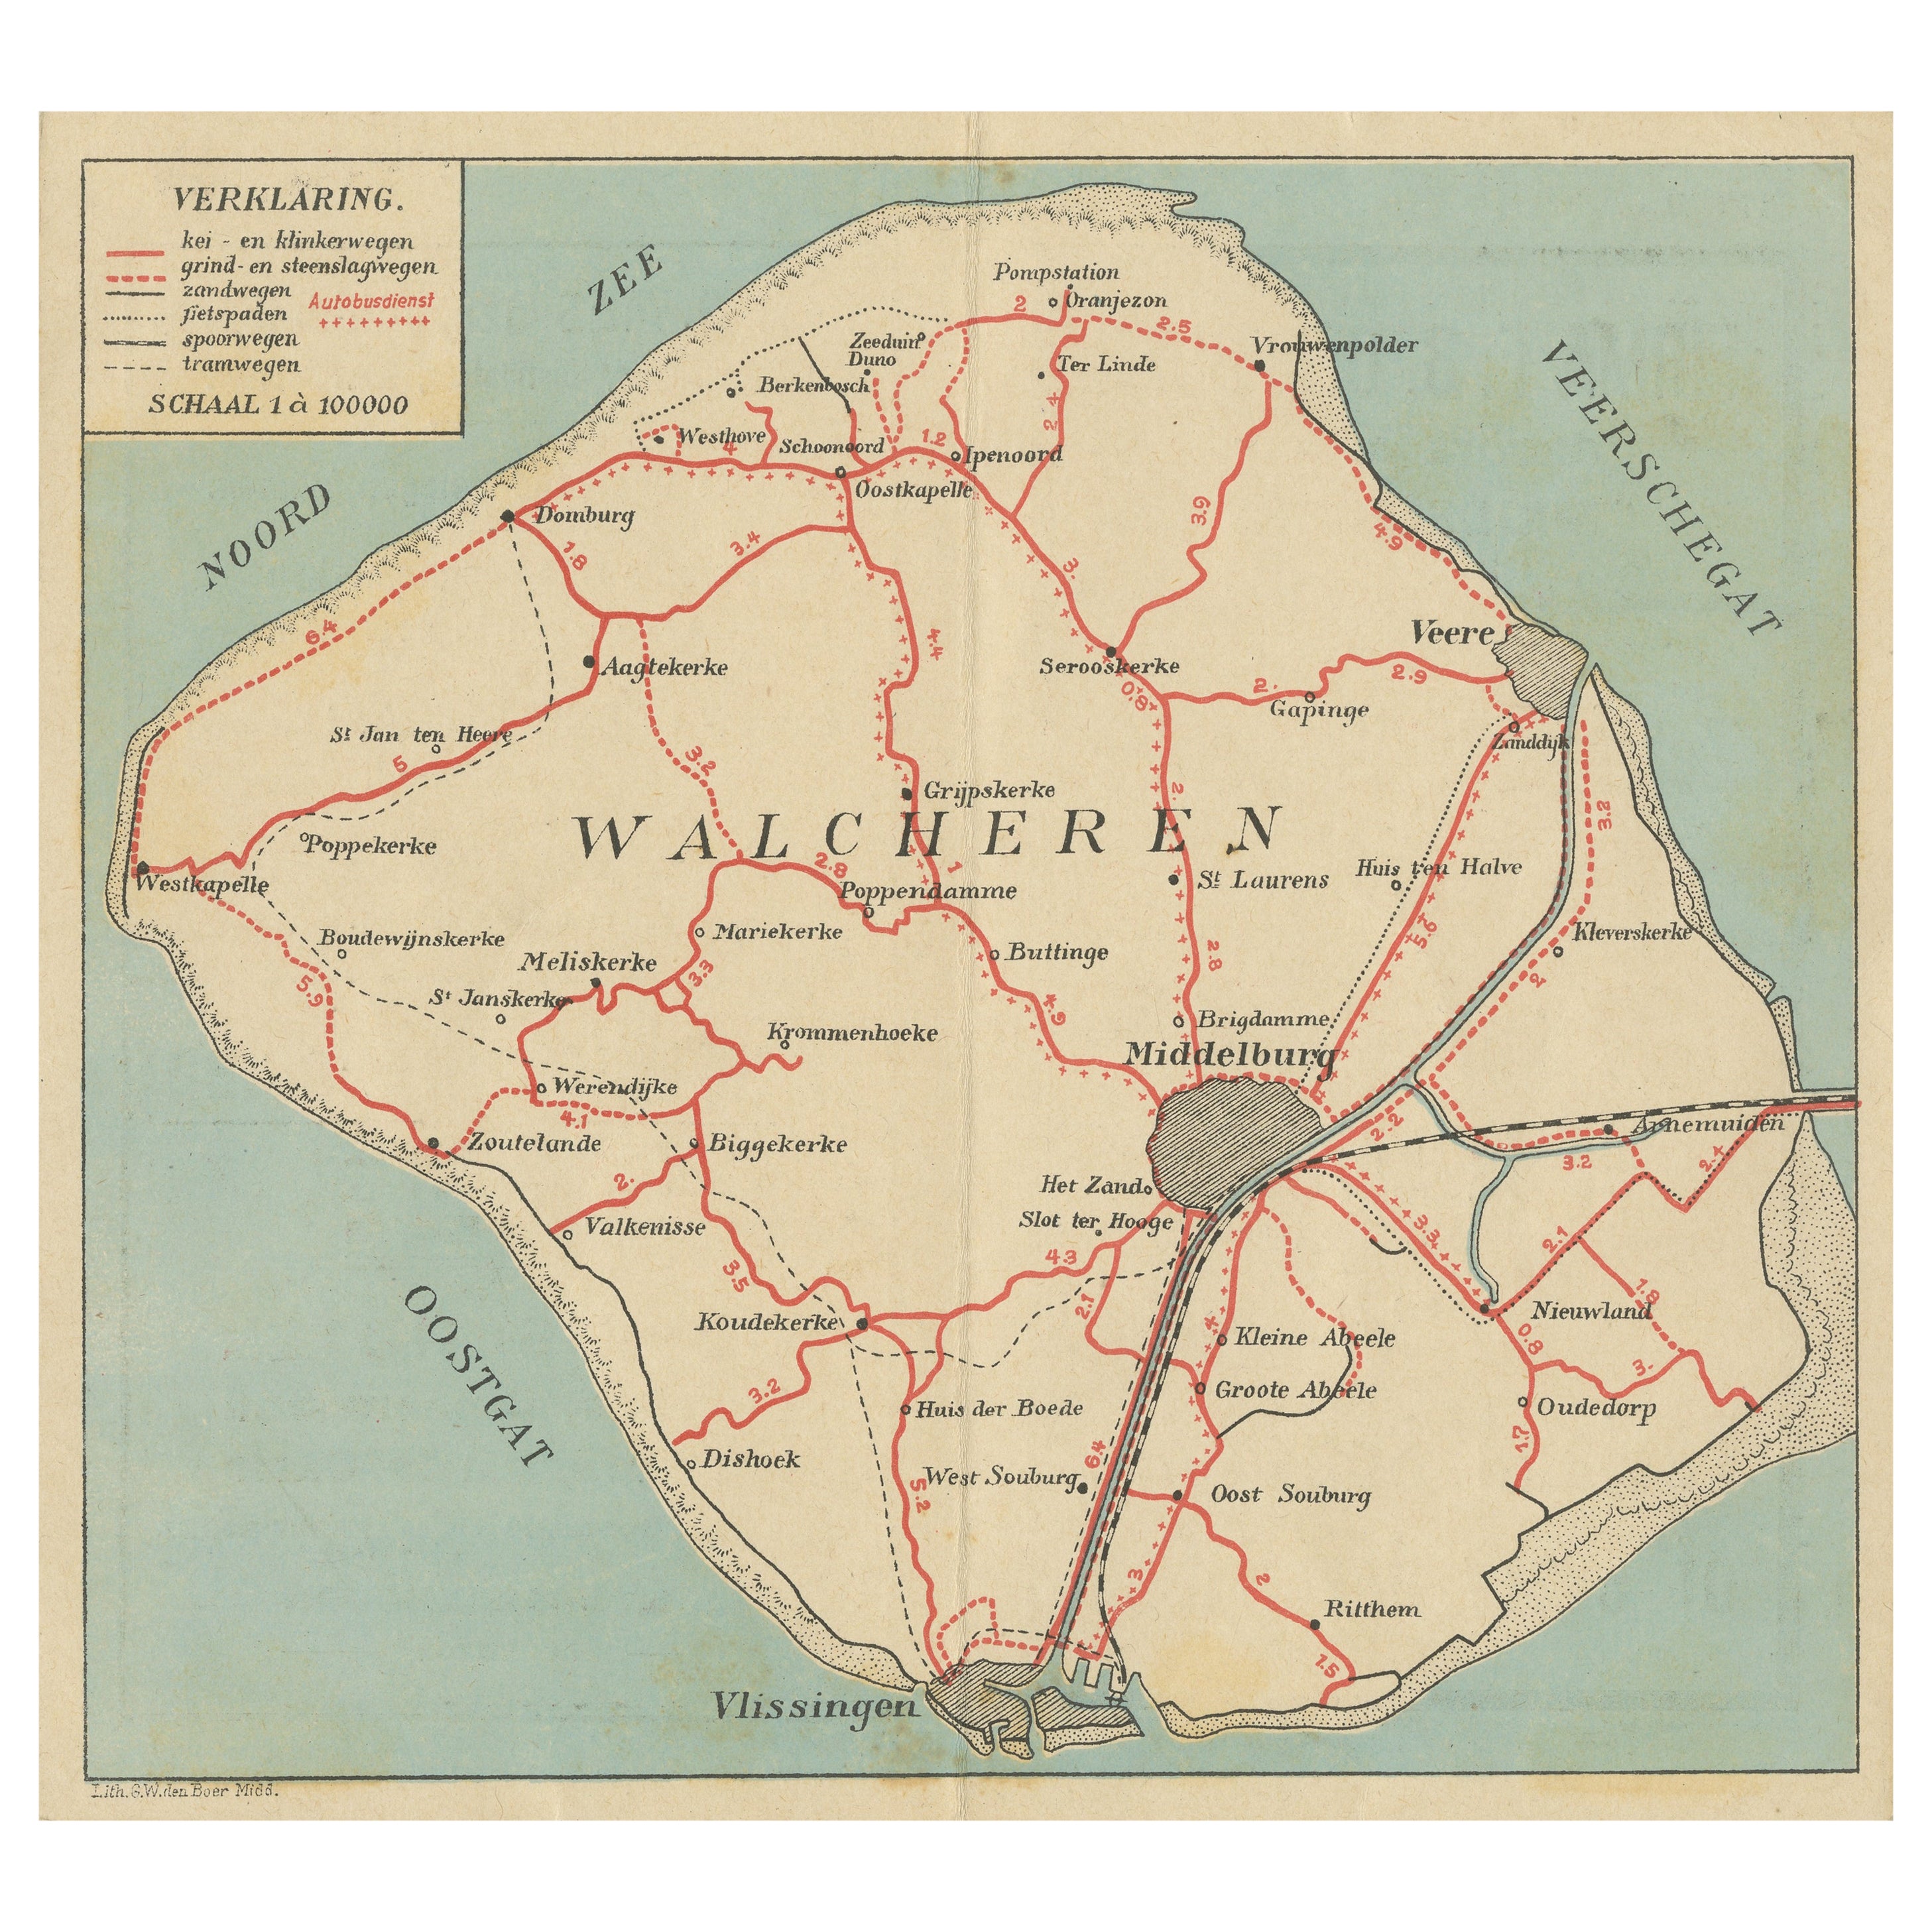 Antike Karte von Walcheren in der Provinz Zeeland, Niederlande, ca. 1910